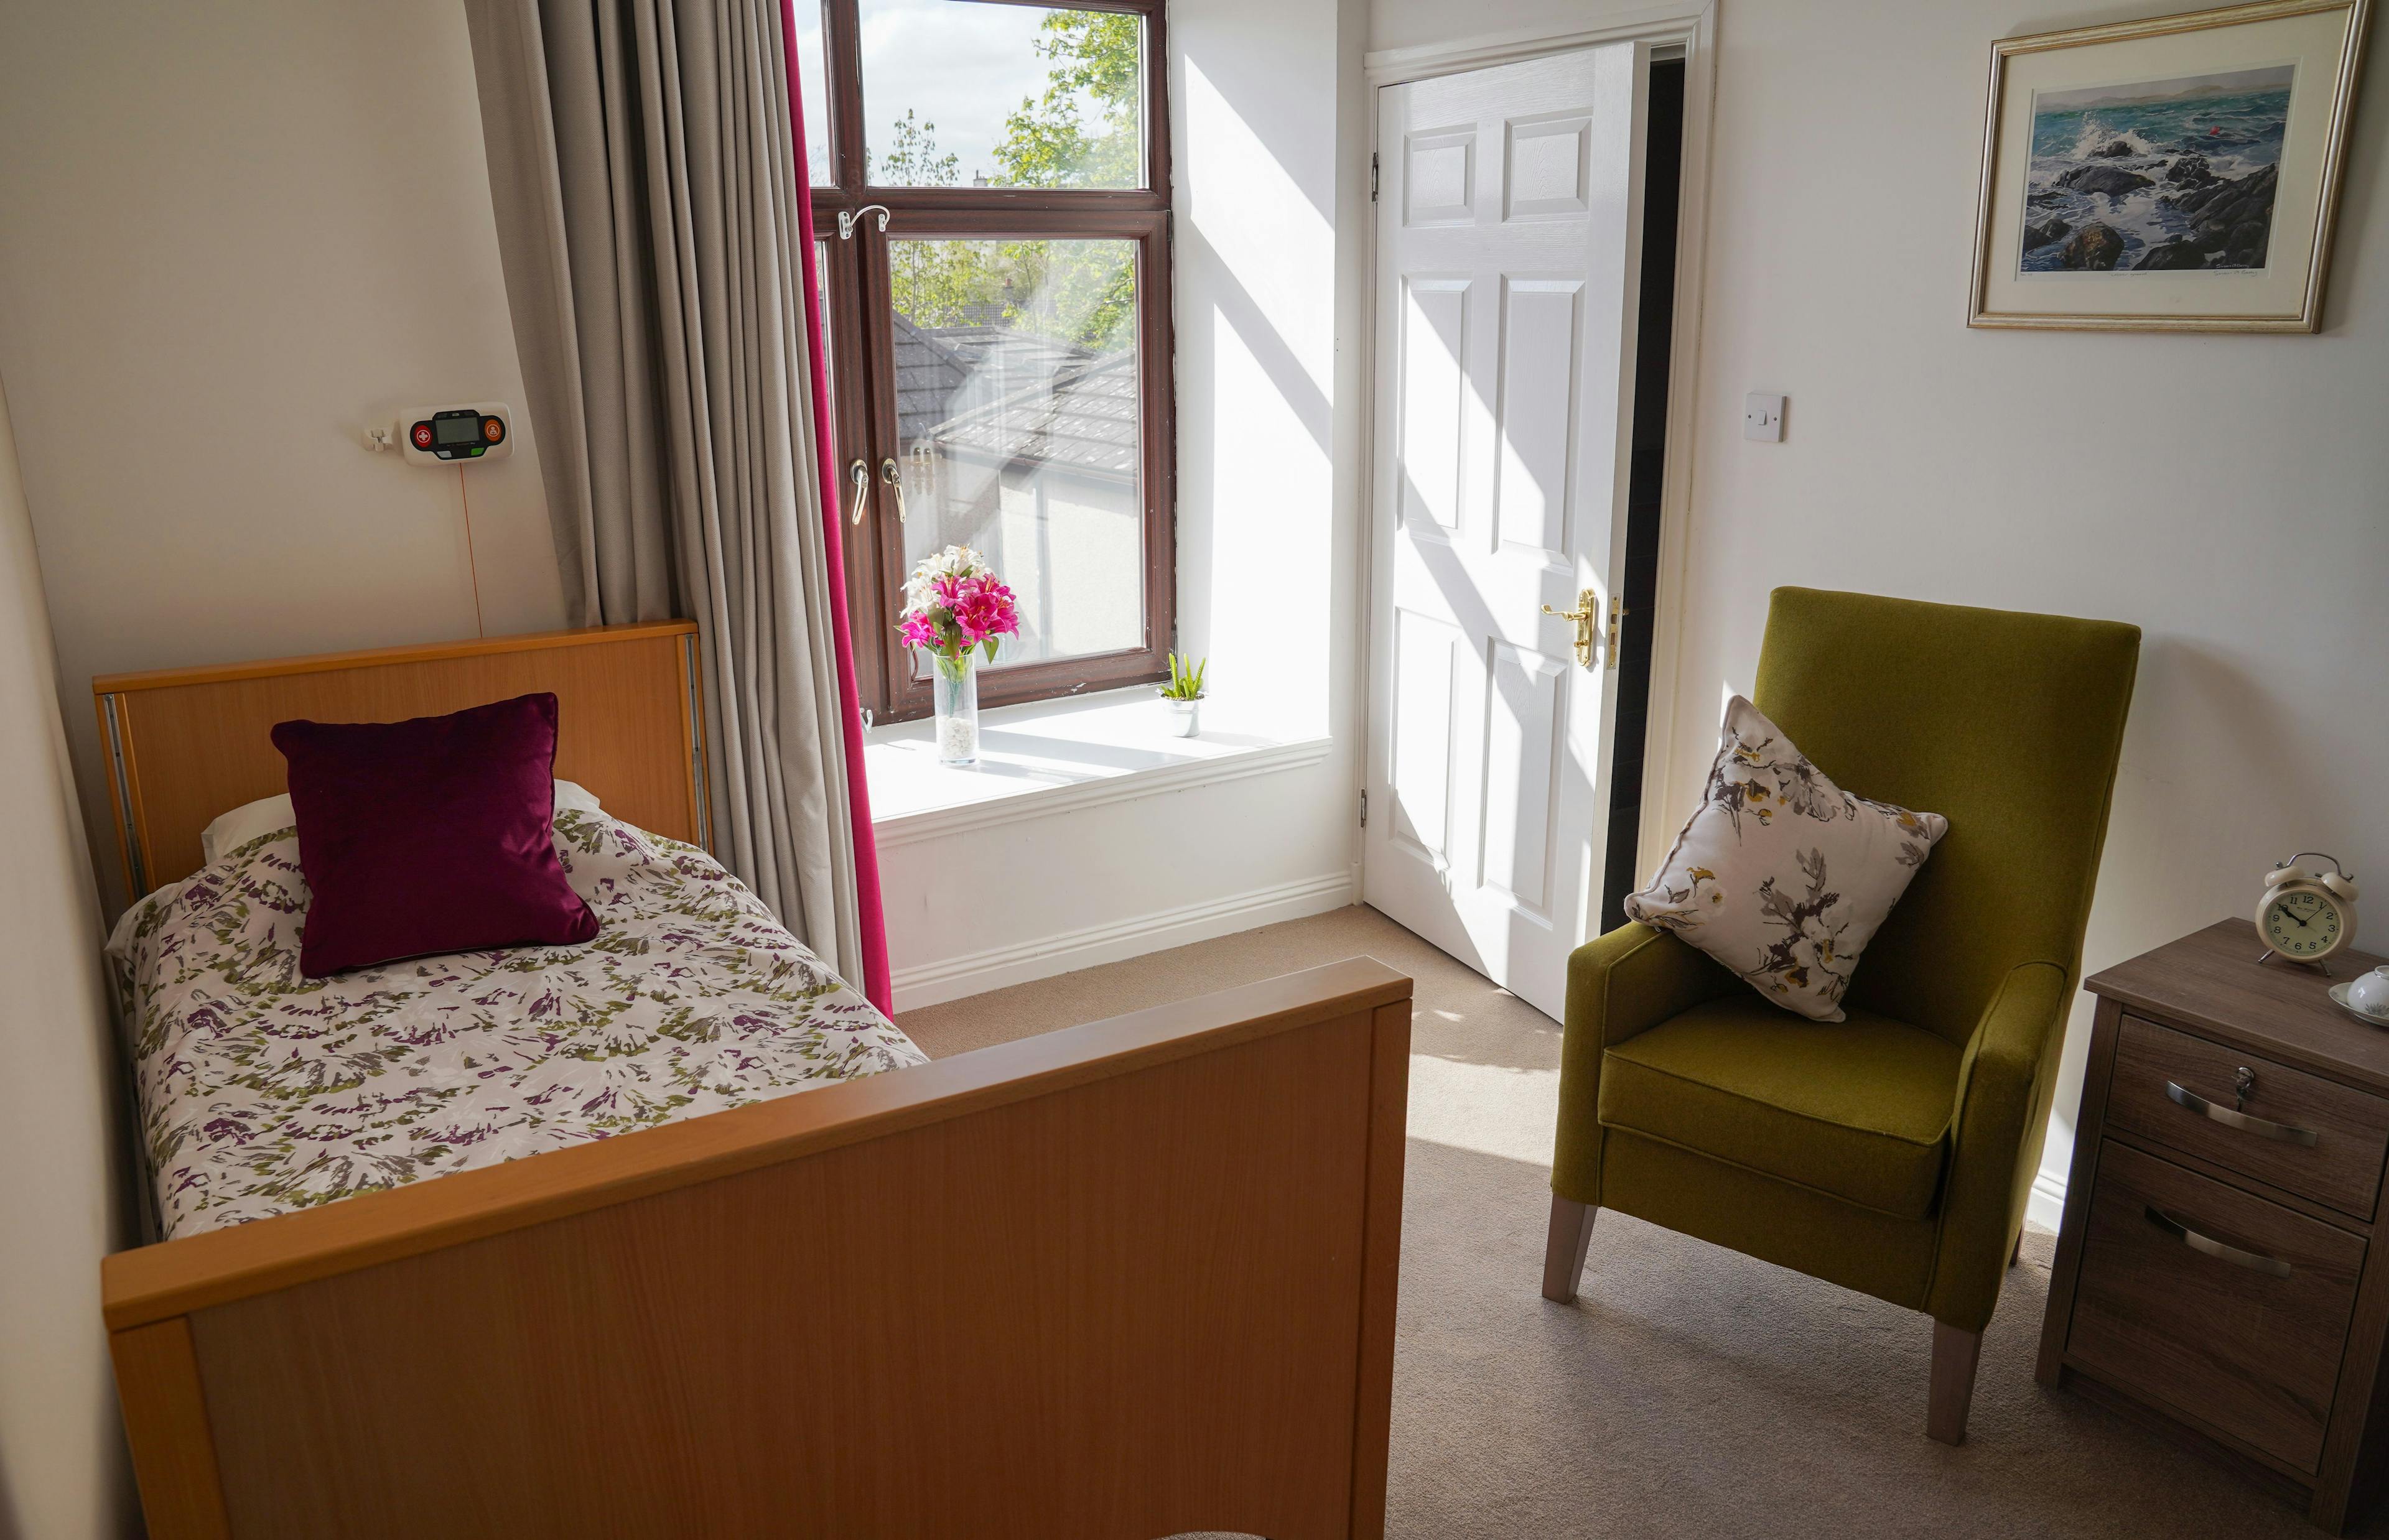 Bedroom at Forefaulds Care Home in Kilbride, Glasgow